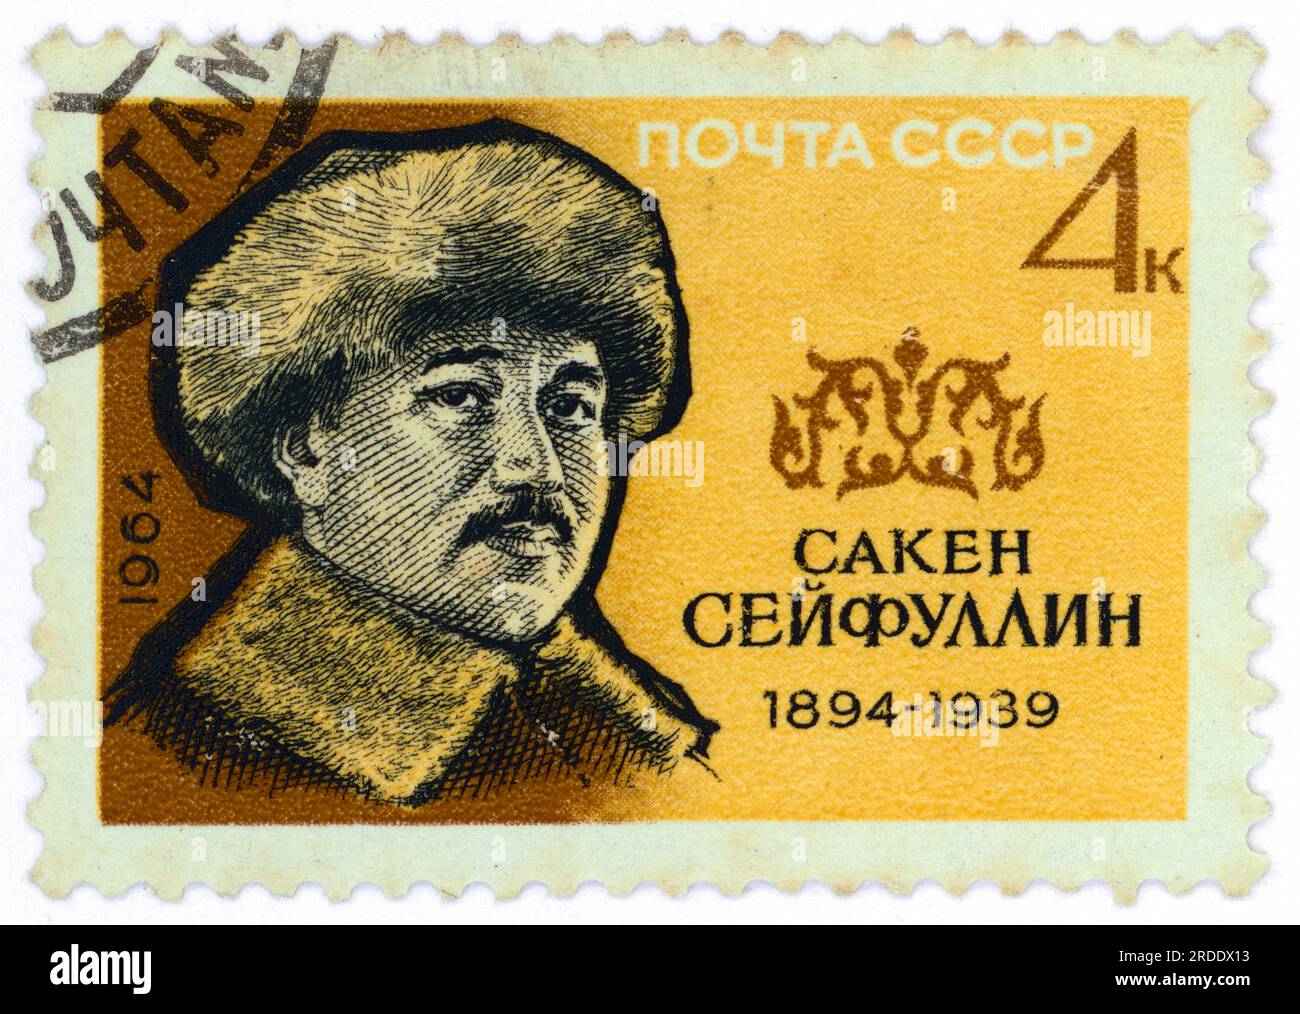 Saken Seifullin (1894 – 1938). Timbre-poste émis en URSS en 1964. Seifullin est un pionnier de la littérature kazakhe moderne, poète et écrivain, et activiste national. Il a été le fondateur et le premier chef de l'Union des écrivains du Kazakhstan, il a été l'auteur d'une littérature controversée appelant à une plus grande indépendance des Kazakhs du pouvoir soviétique et russe. Il a rencontré la répression et a été exécuté en 1938. Le gouvernement soviétique l'a réhabilité à titre posthume pendant la déstalinisation. Banque D'Images